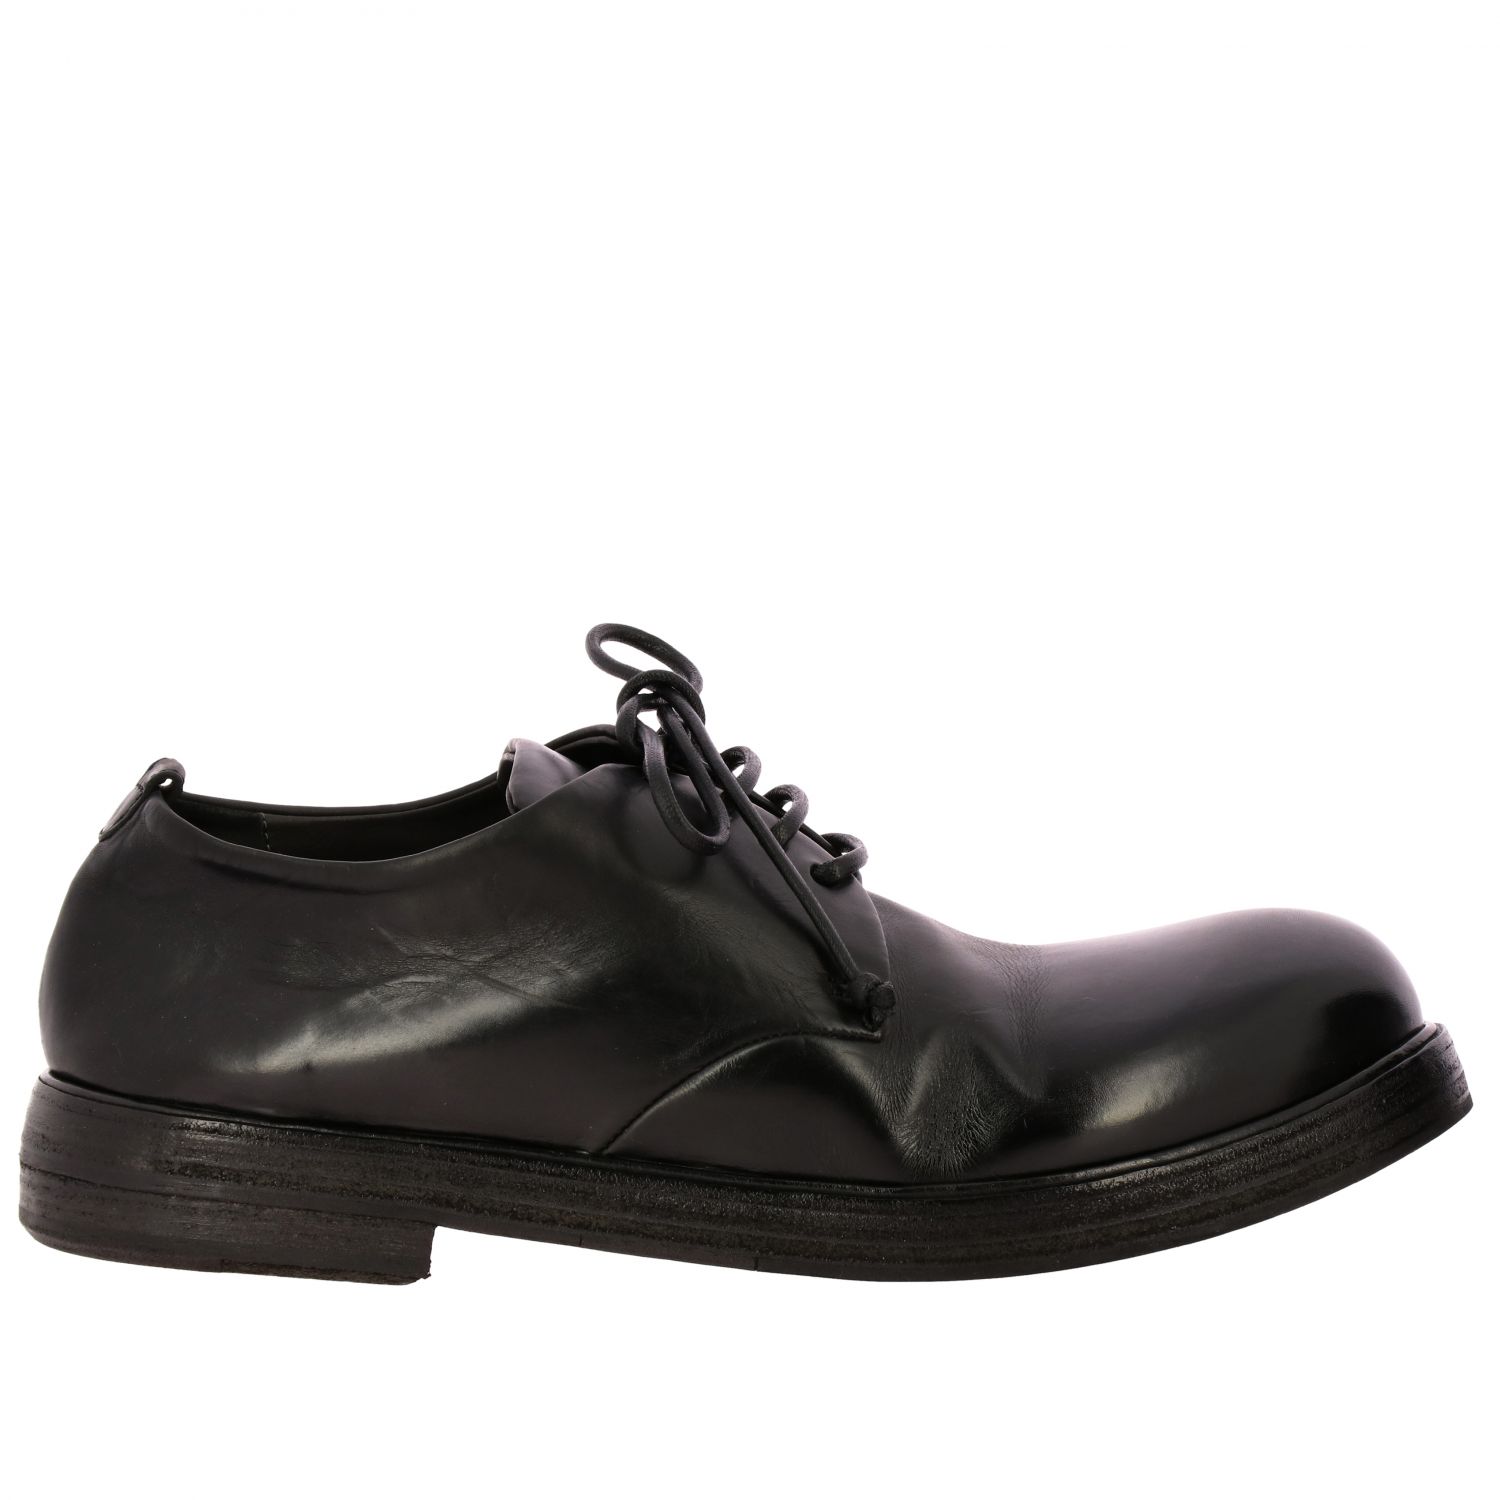 Hombre Zapatos de Zapatos con cordones de Zapatos Derby Zapatos derby Zucca Zeppa Marsèll de Cuero de color Negro para hombre 